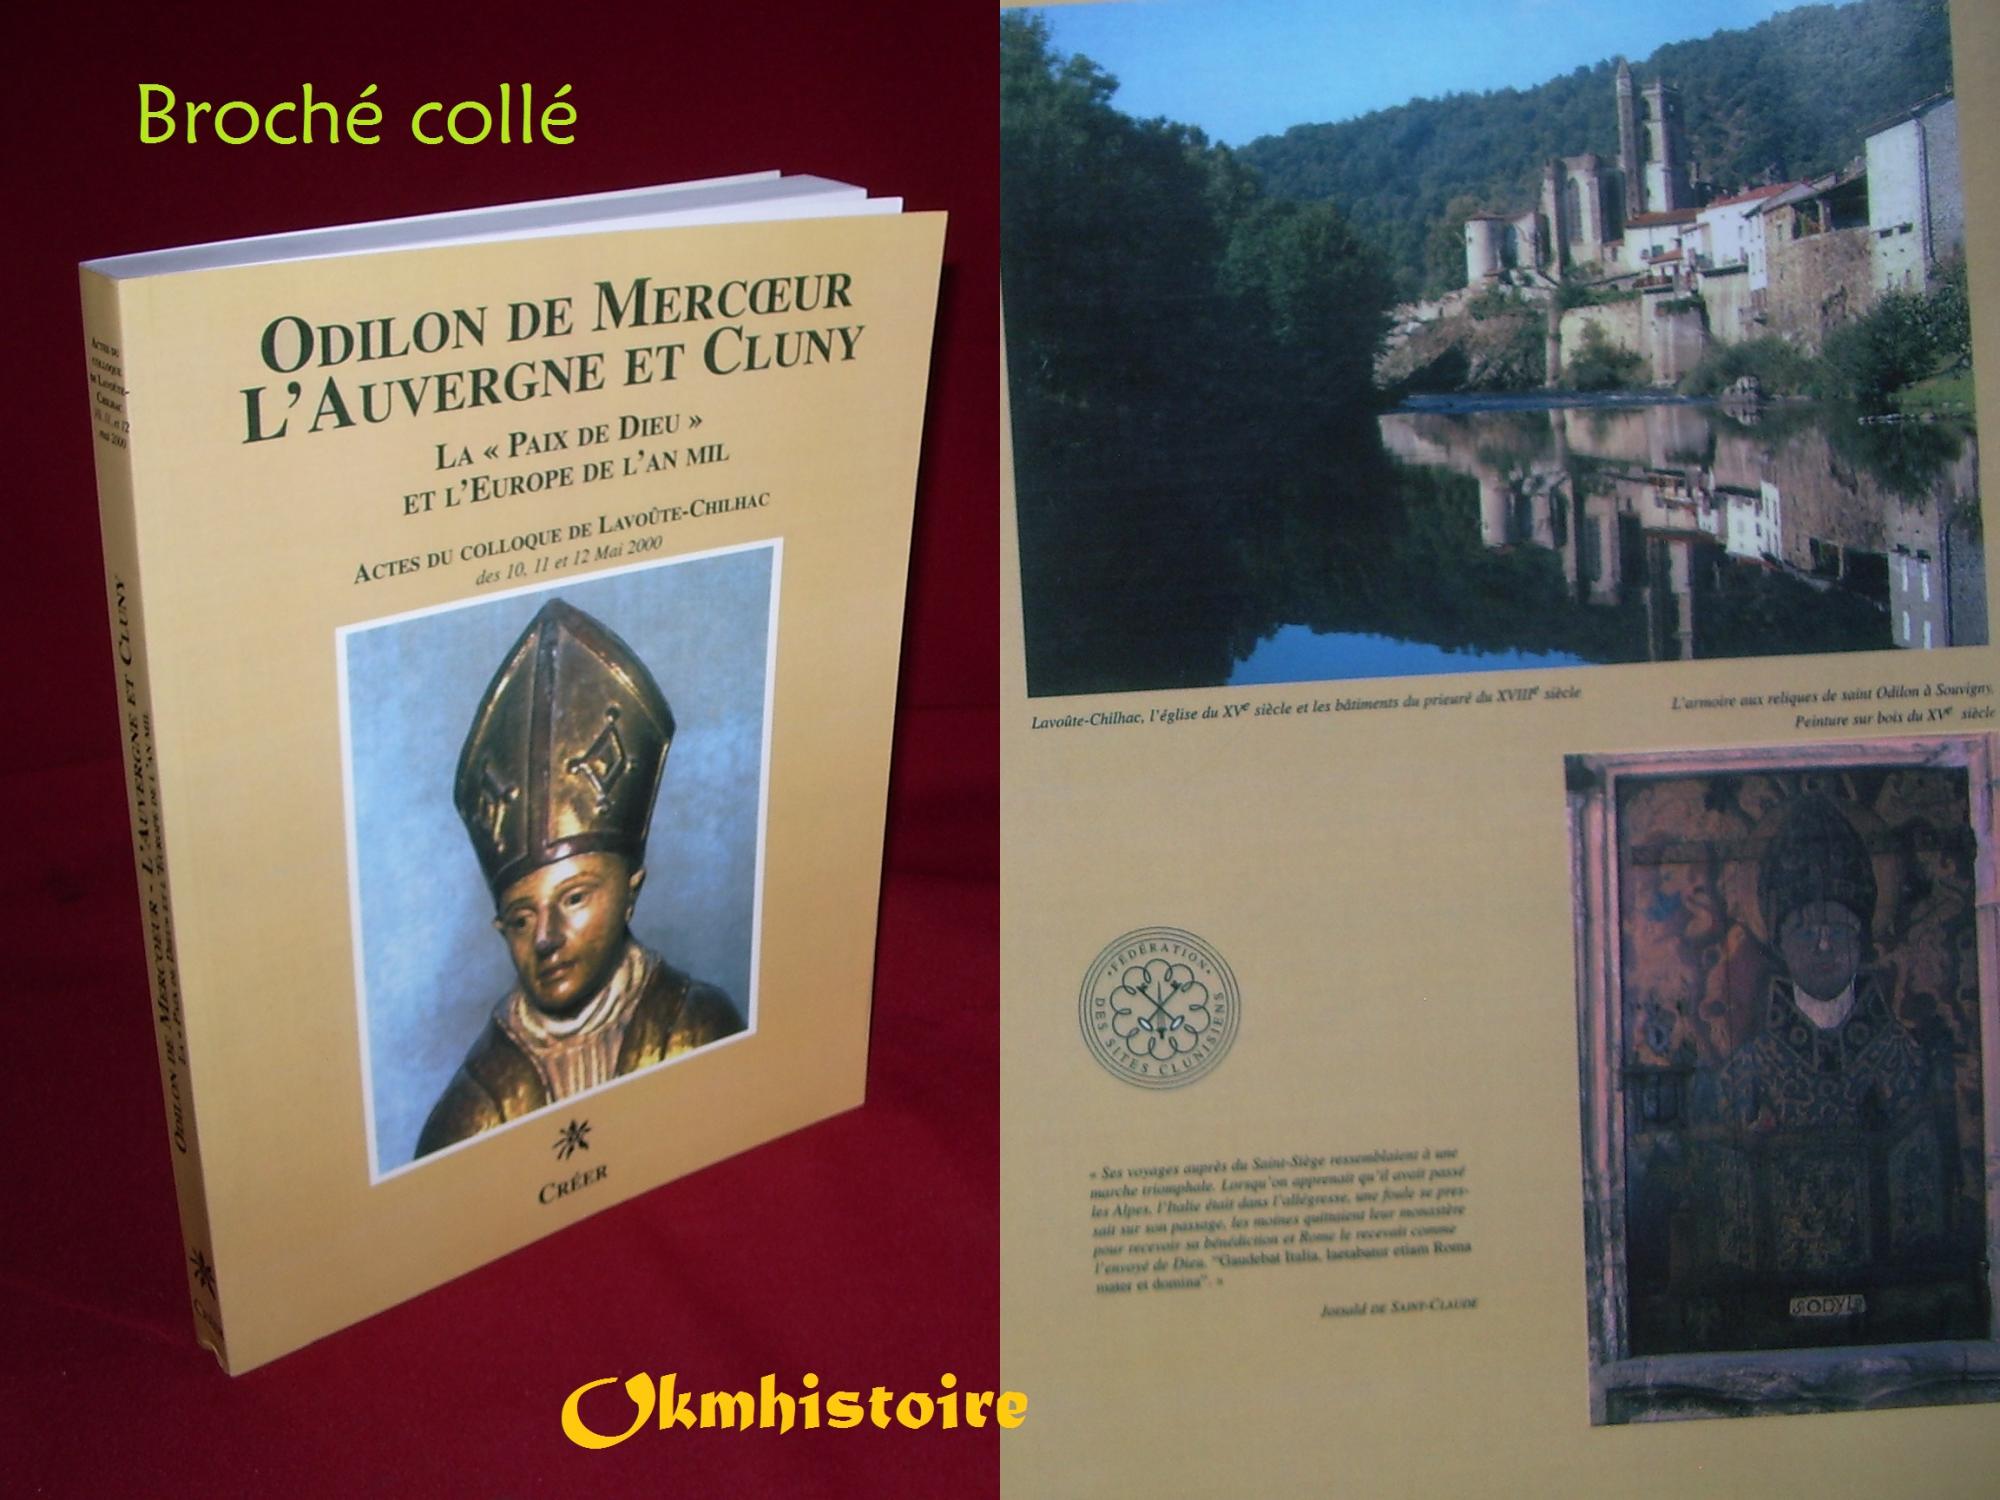 Odilon de Mercoeur l'Auvergne et Cluny, la paix de dieu et l'Europe de l'an mil -------- [ Actes du Colloque de Lavoûte-Chilhac des 10,11 et 12 Mai 2000 ] - Collectif